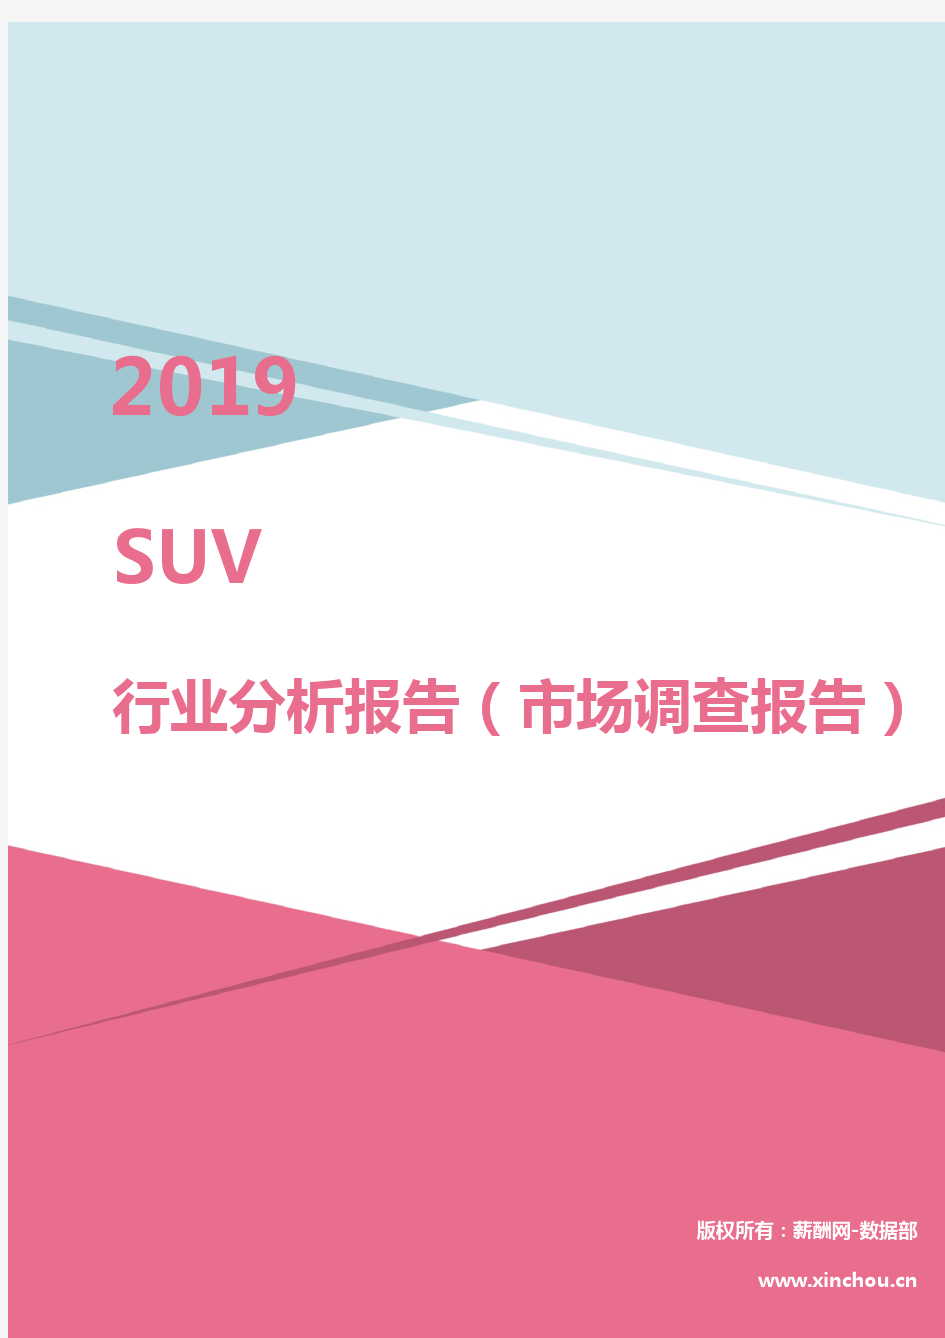 2019年SUV行业分析报告(市场调查报告)